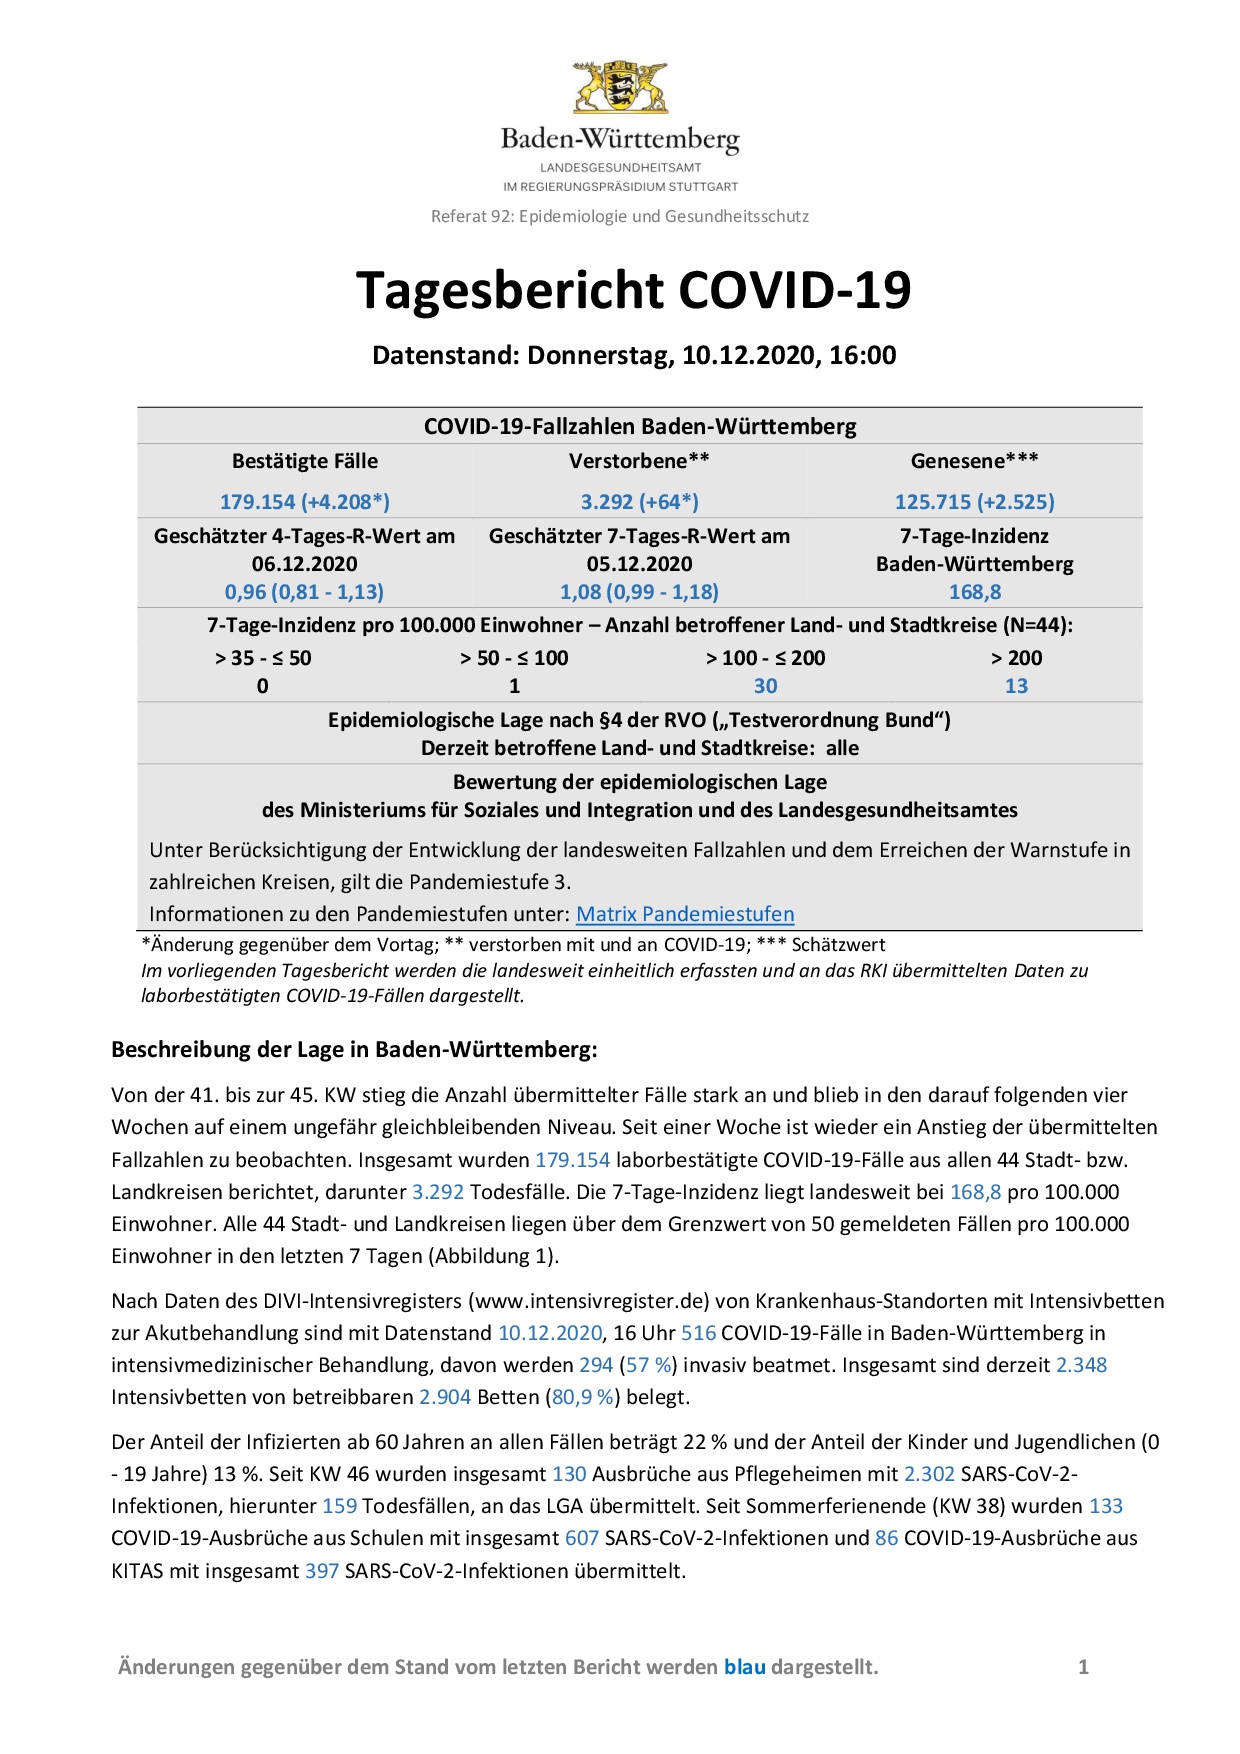 COVID-19 Tagesbericht (10.12.2020) des Landesgesundheitsamts Baden-Württemberg – (ganz ausführlich)